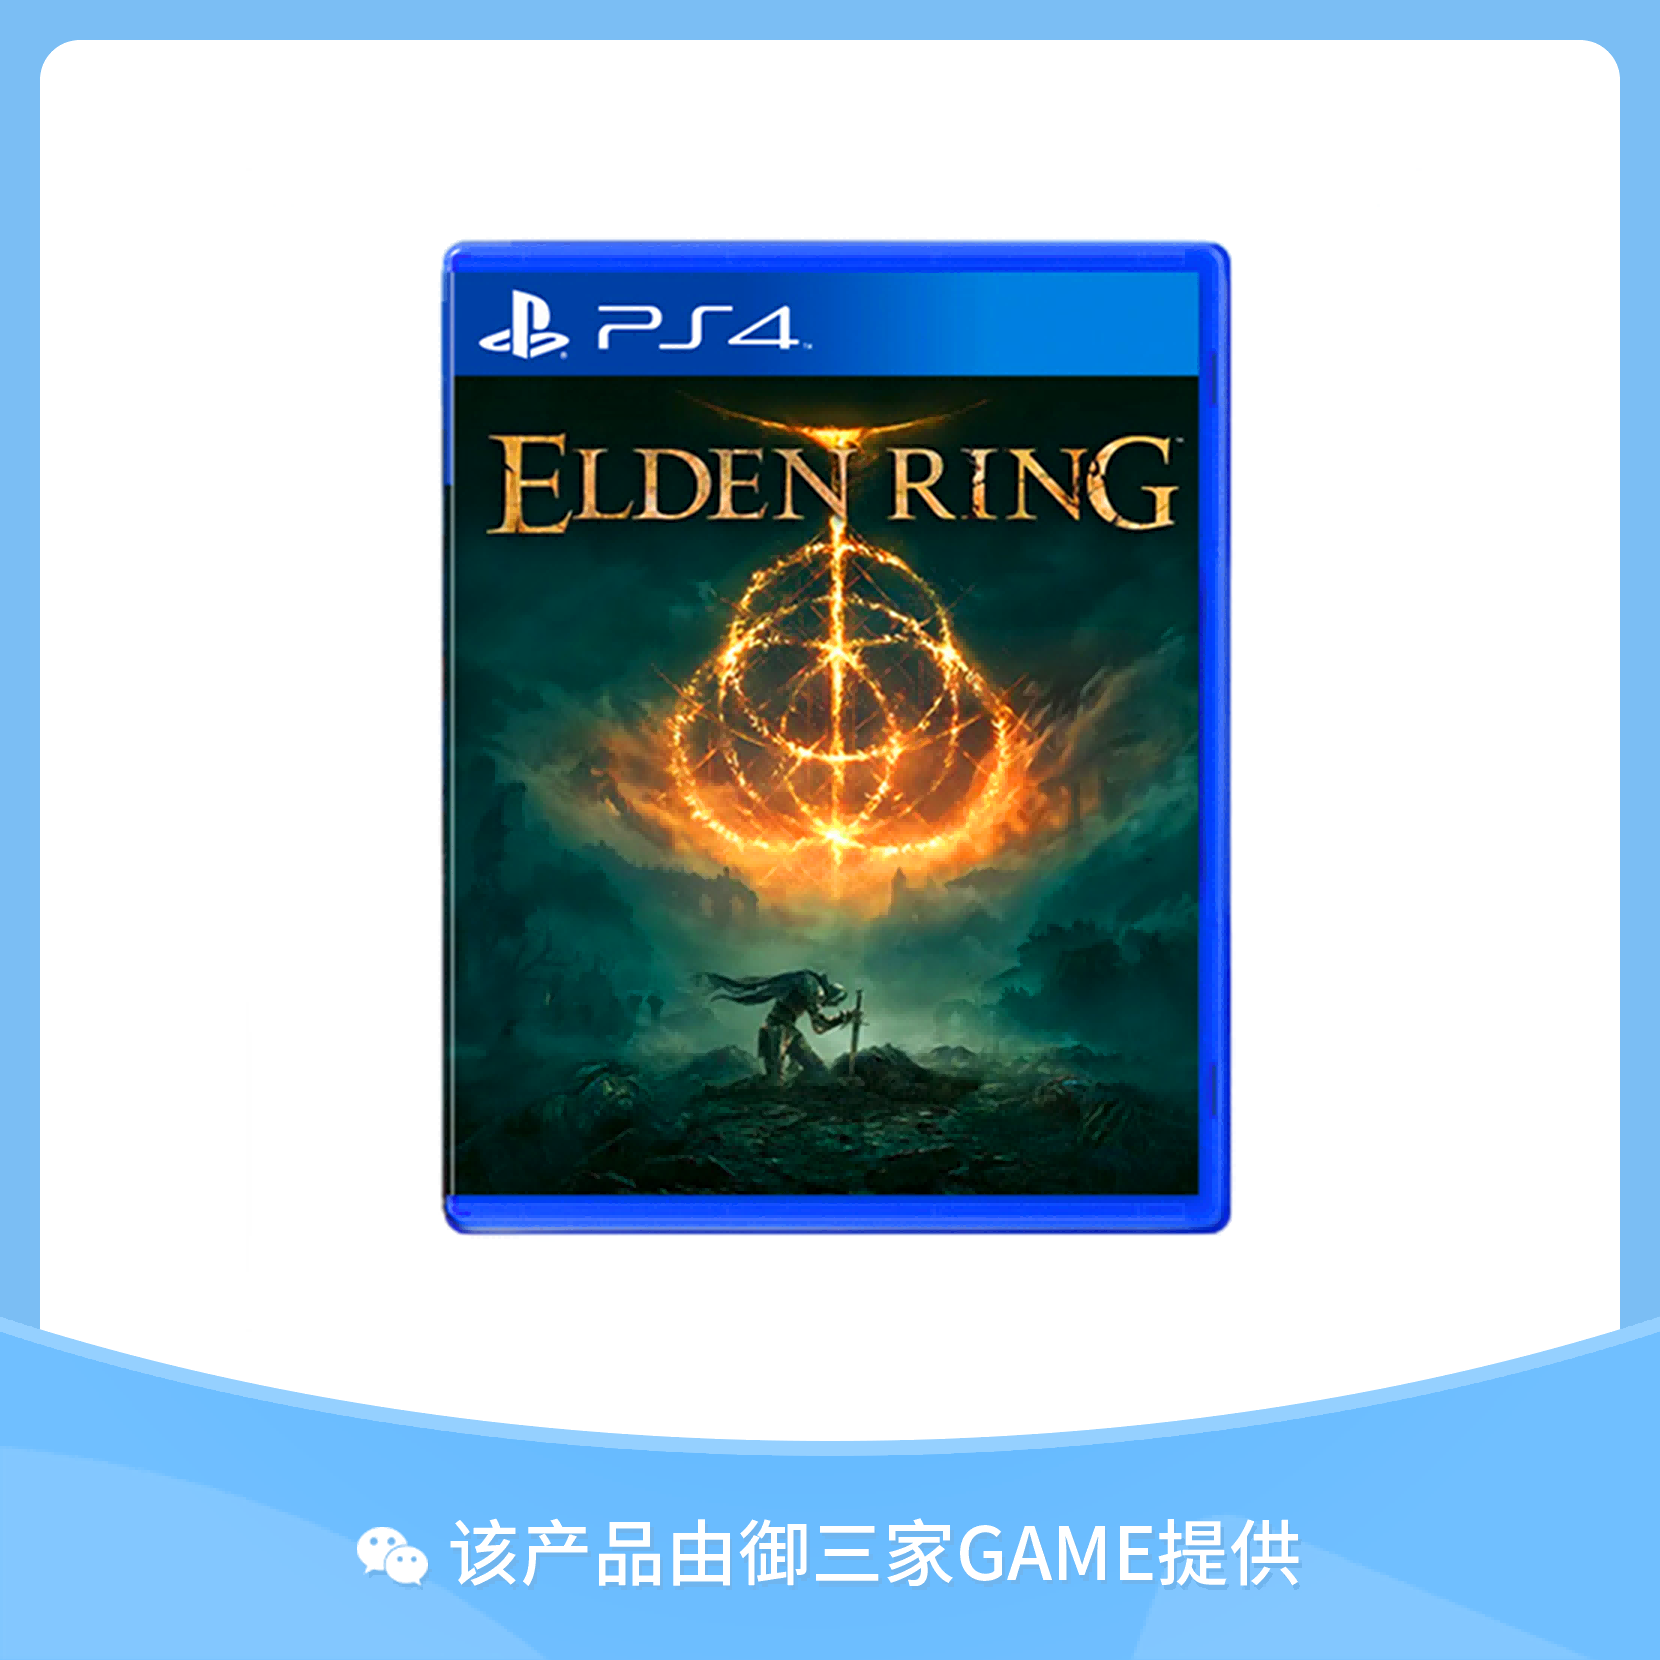 索尼PS4游戏 艾尔登法环 老头环 远古之环 中文